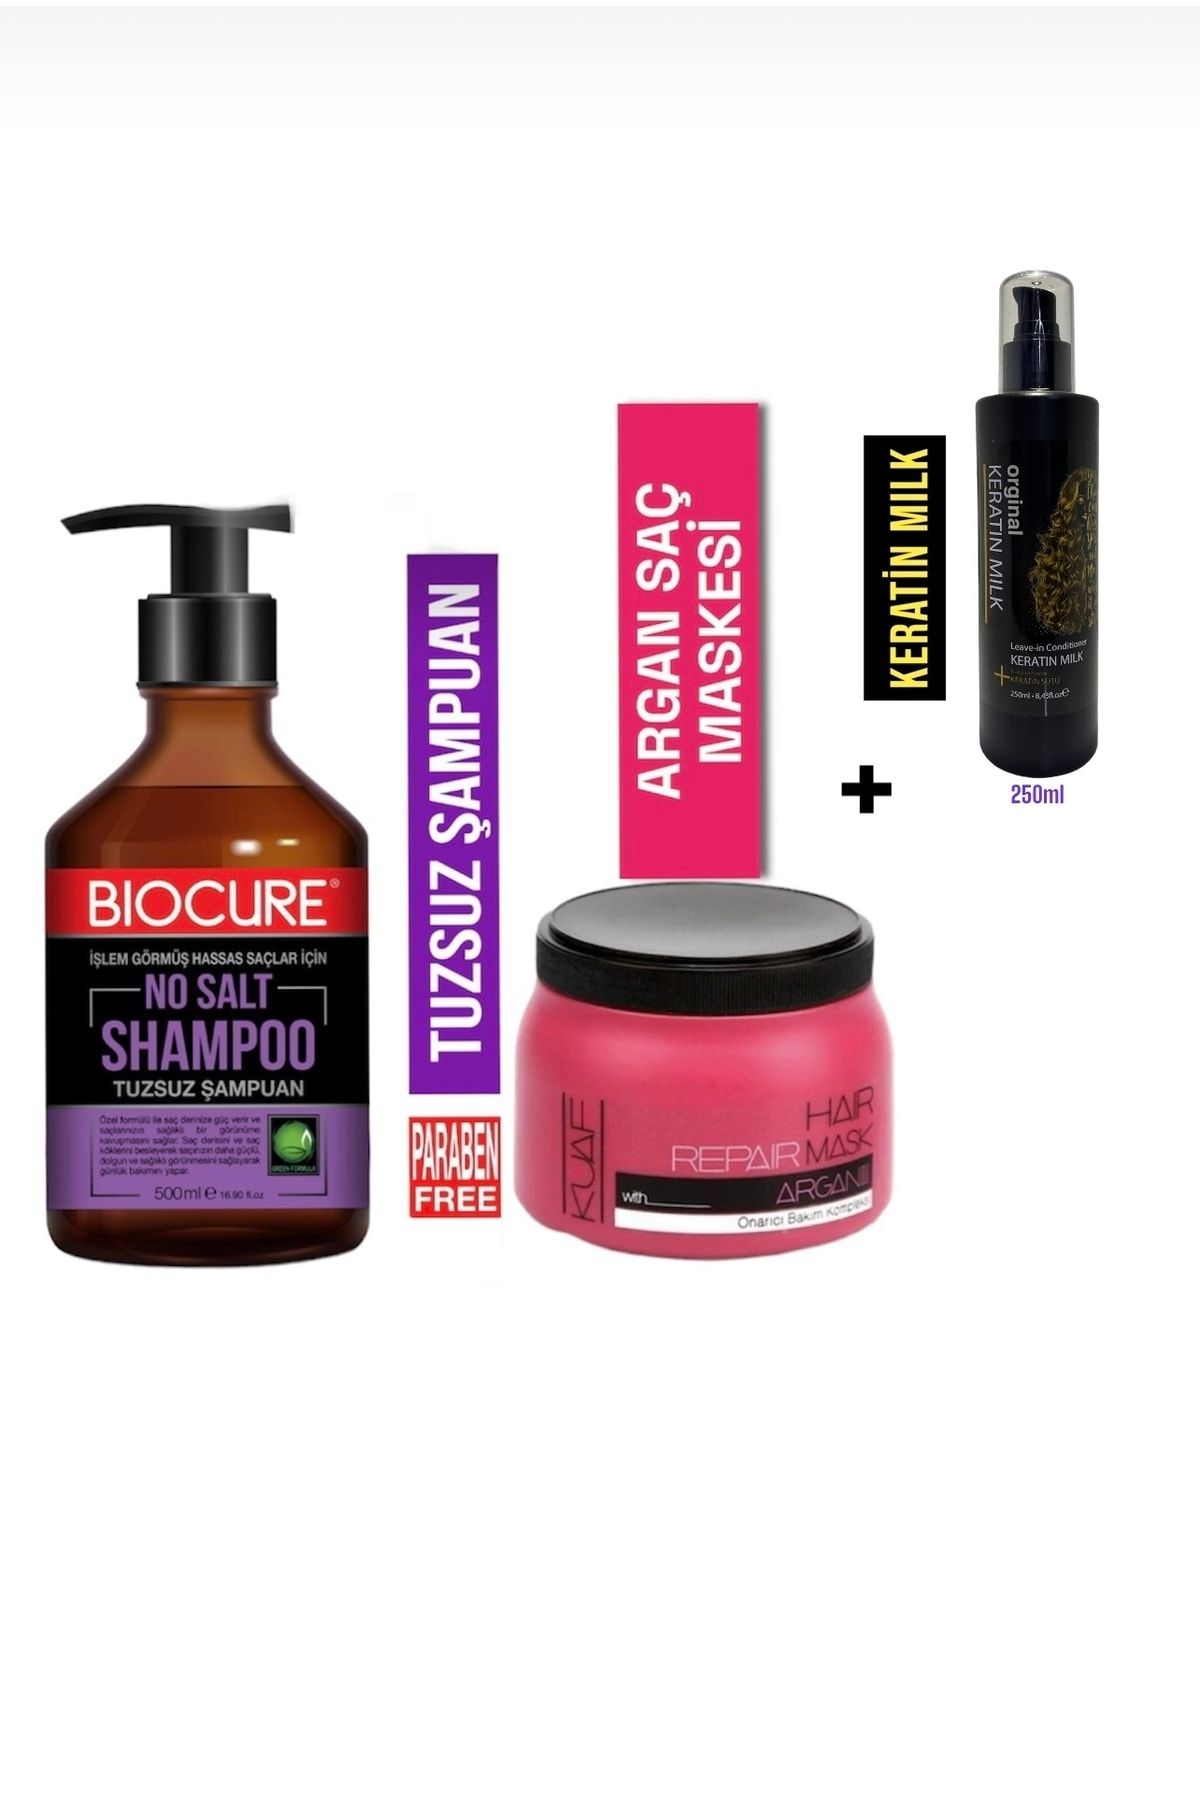 Biocure Tuzsuz Arındırıcı Saç Bakım Şampuanı 500ml Argan Saç Maskesi Keratin Sütü Hediye